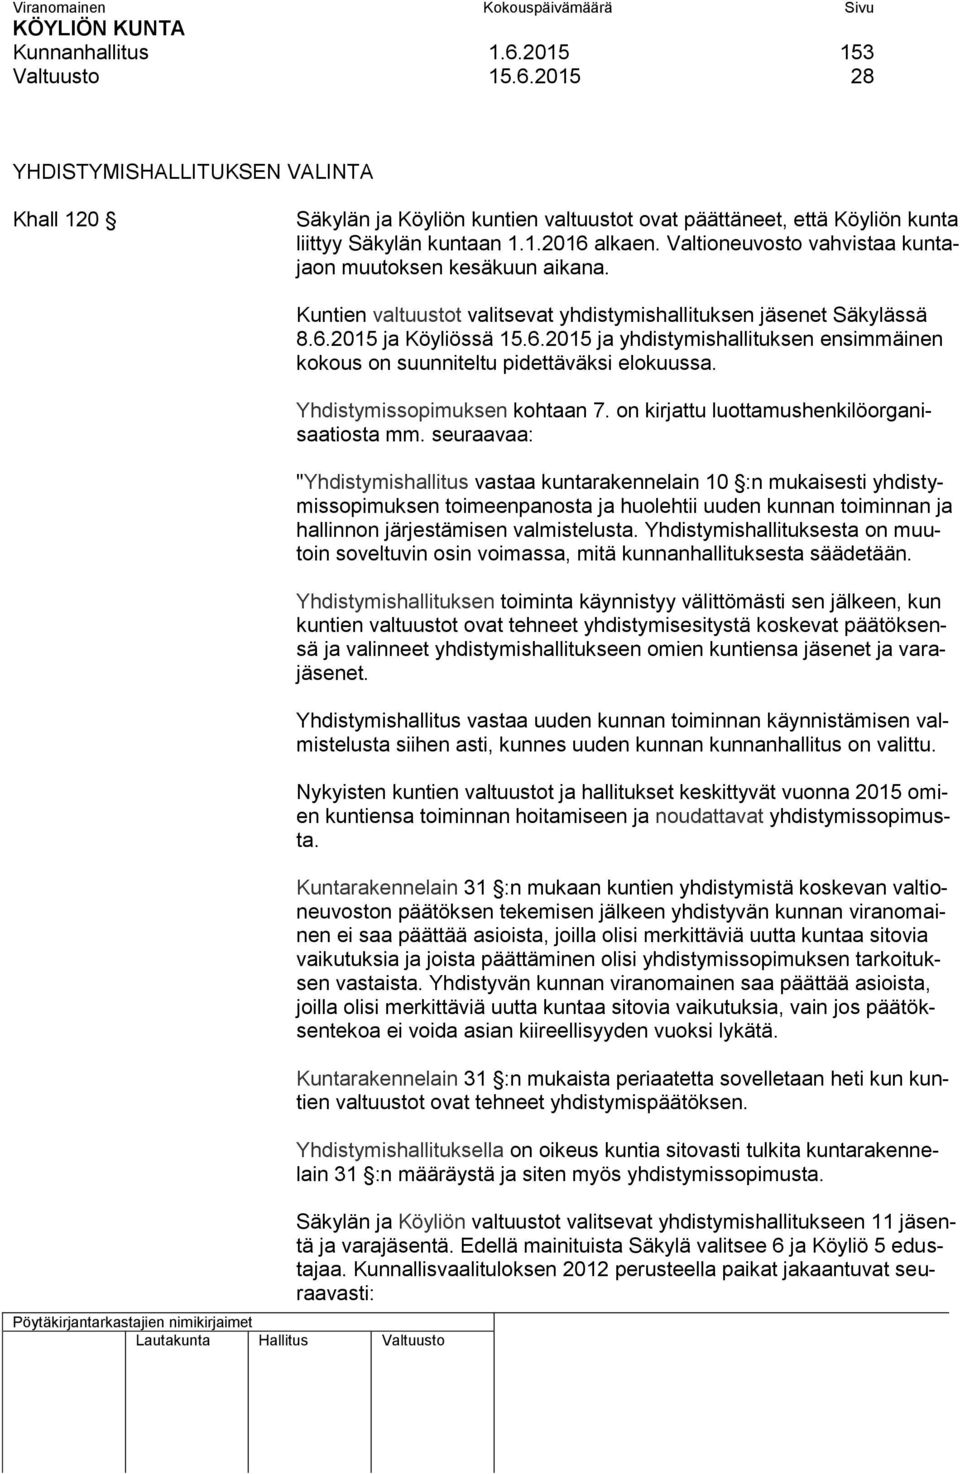 2015 ja Köyliössä 15.6.2015 ja yhdistymishallituksen ensimmäinen kokous on suunniteltu pidettäväksi elokuussa. Yhdistymissopimuksen kohtaan 7. on kirjattu luottamushenkilöorganisaatiosta mm.